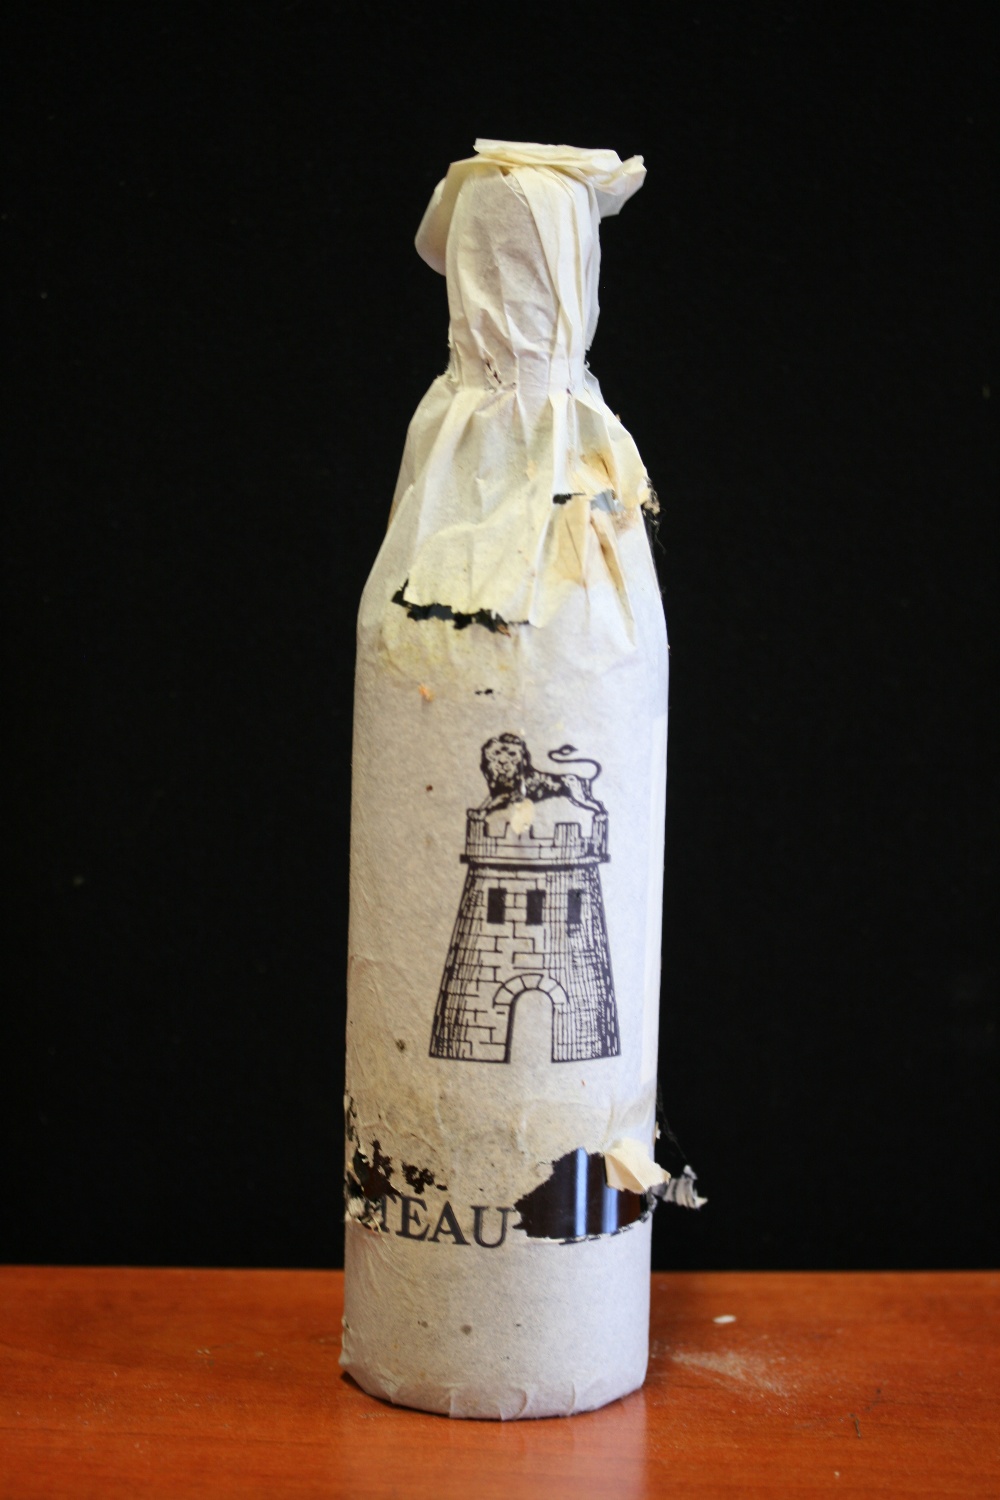 BORDEAUX - bottle of 1989 Chateau Latour Grand Cru Pauillac.